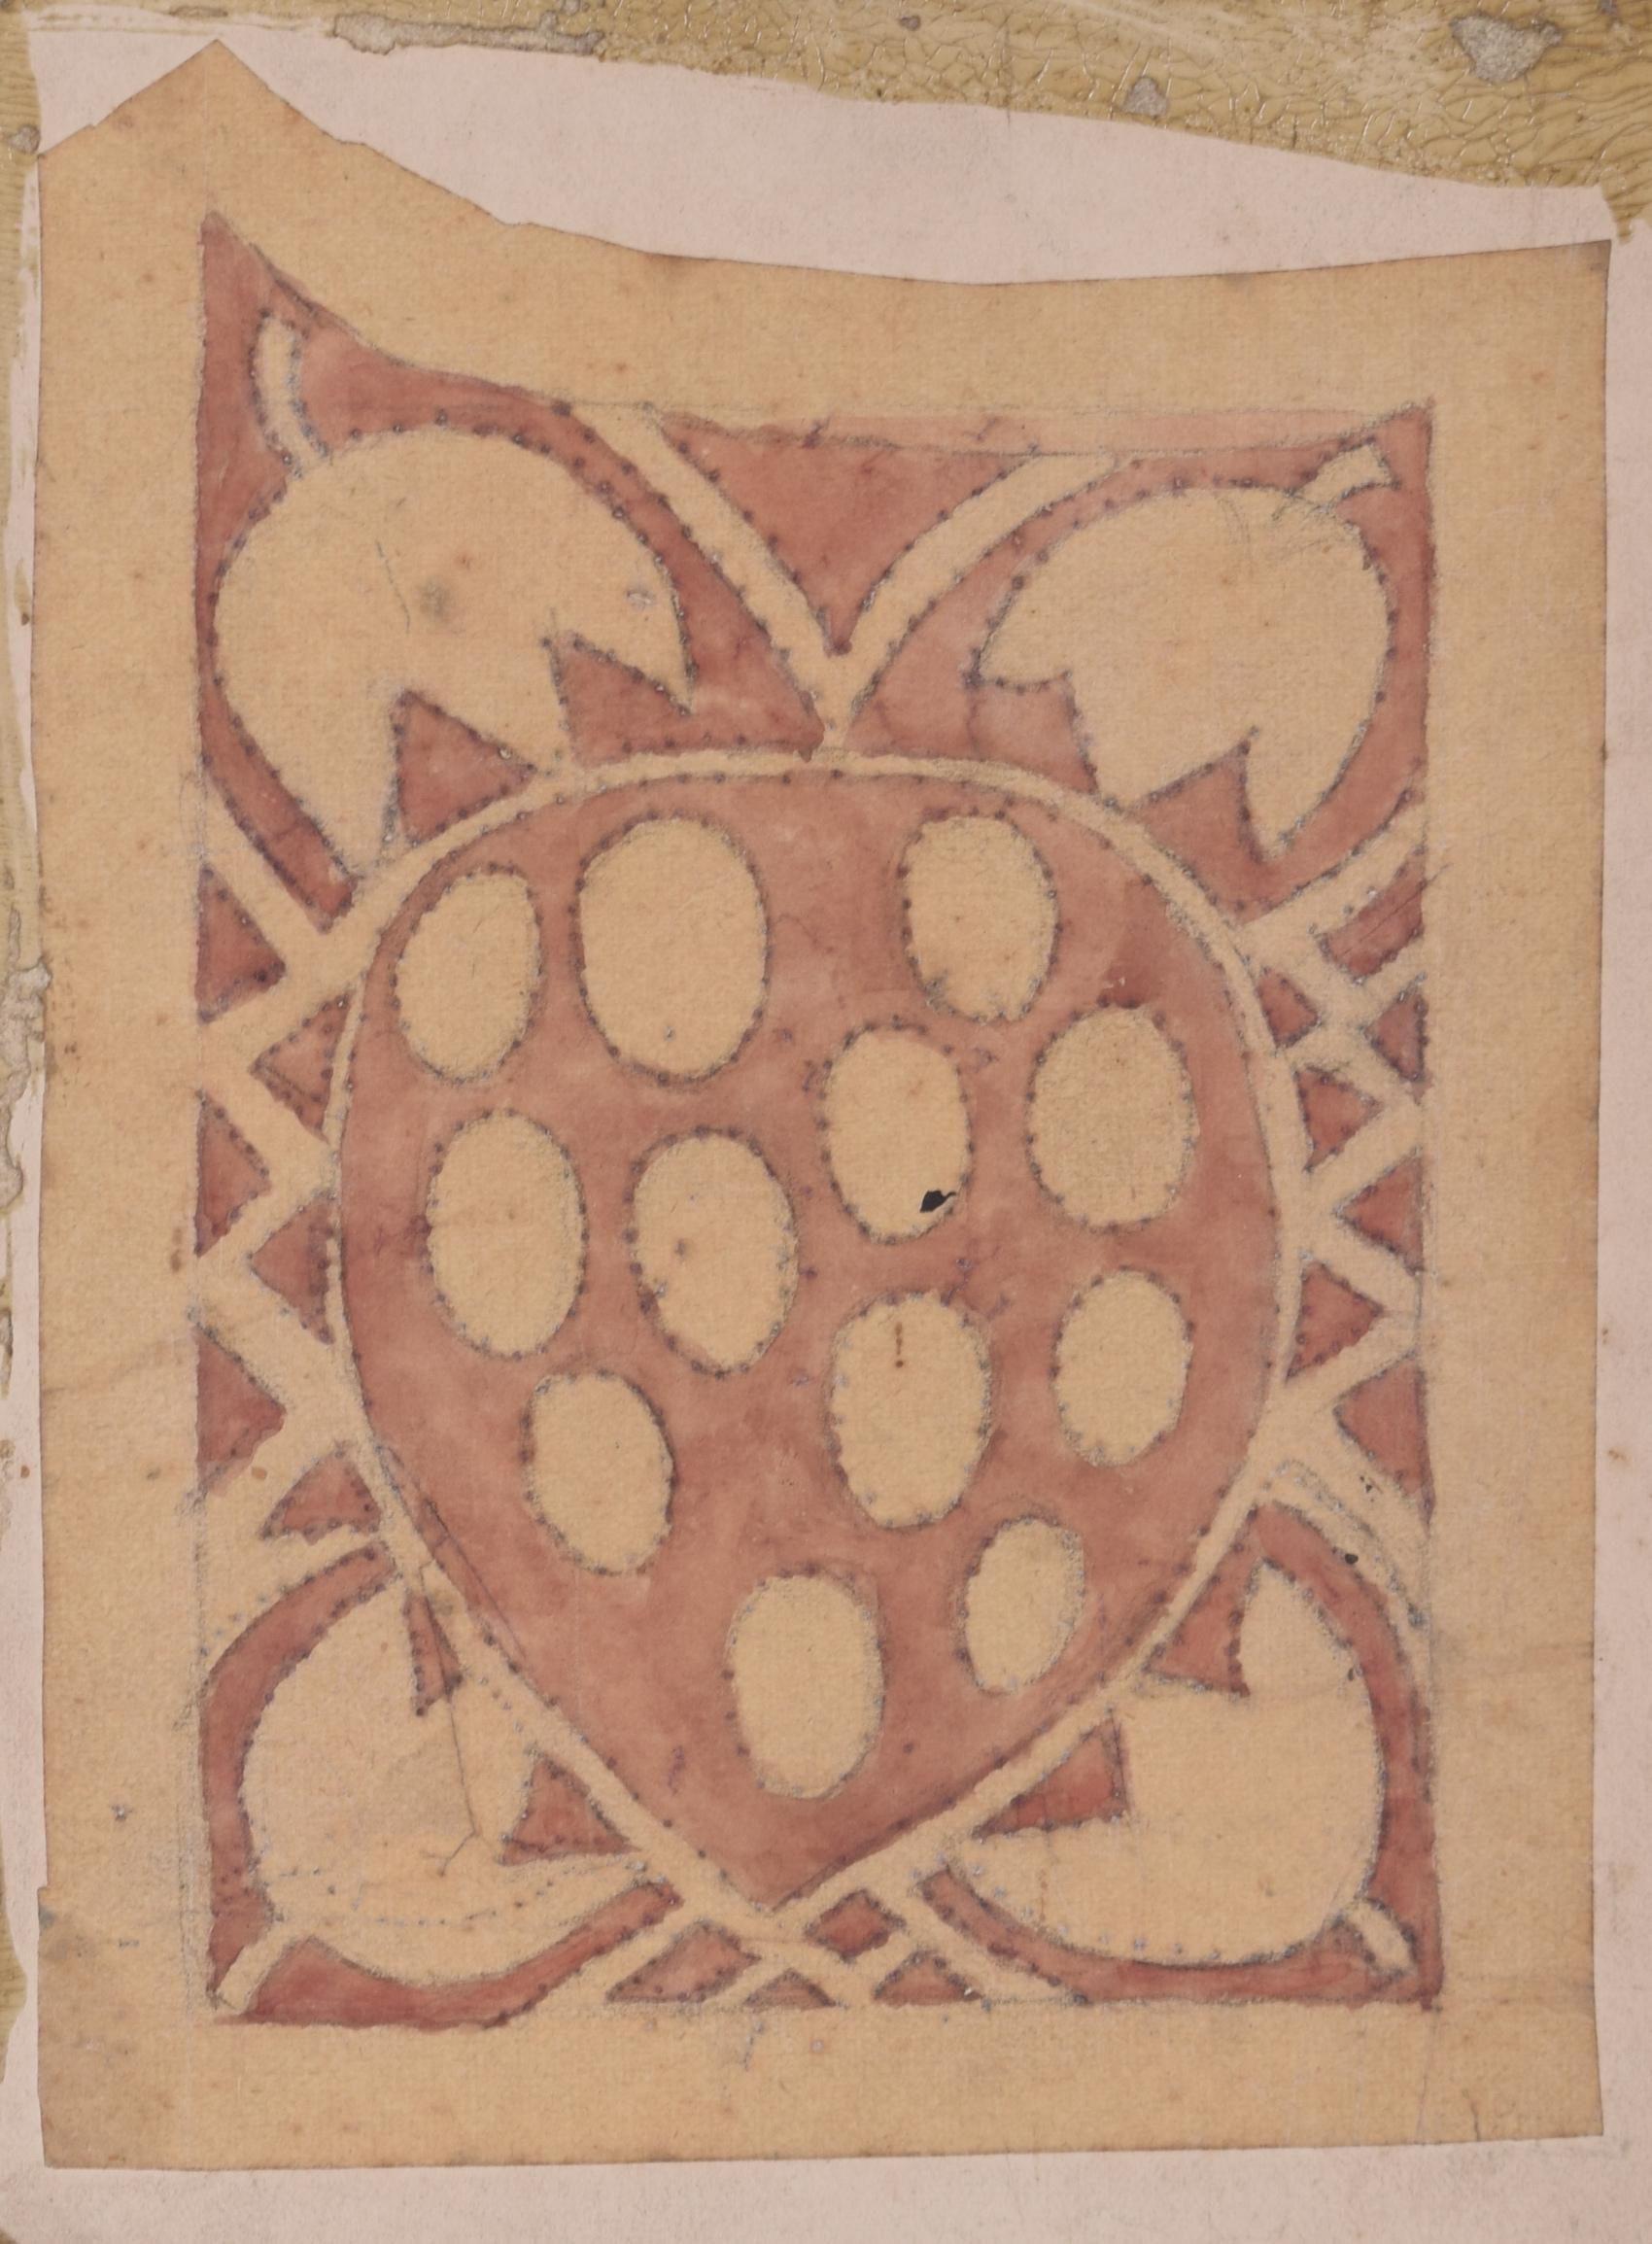 Reginald Hallward (1858-1948)
Design für ein Transparent in Form einer Erdbeere
Aquarell
14 x 10 cm

Ein Entwurf für ein Banner mit einem Erdbeermotiv. Das Design ist, wie viele andere von Hallward, wahrscheinlich vom Arts-and-Crafts-Stil